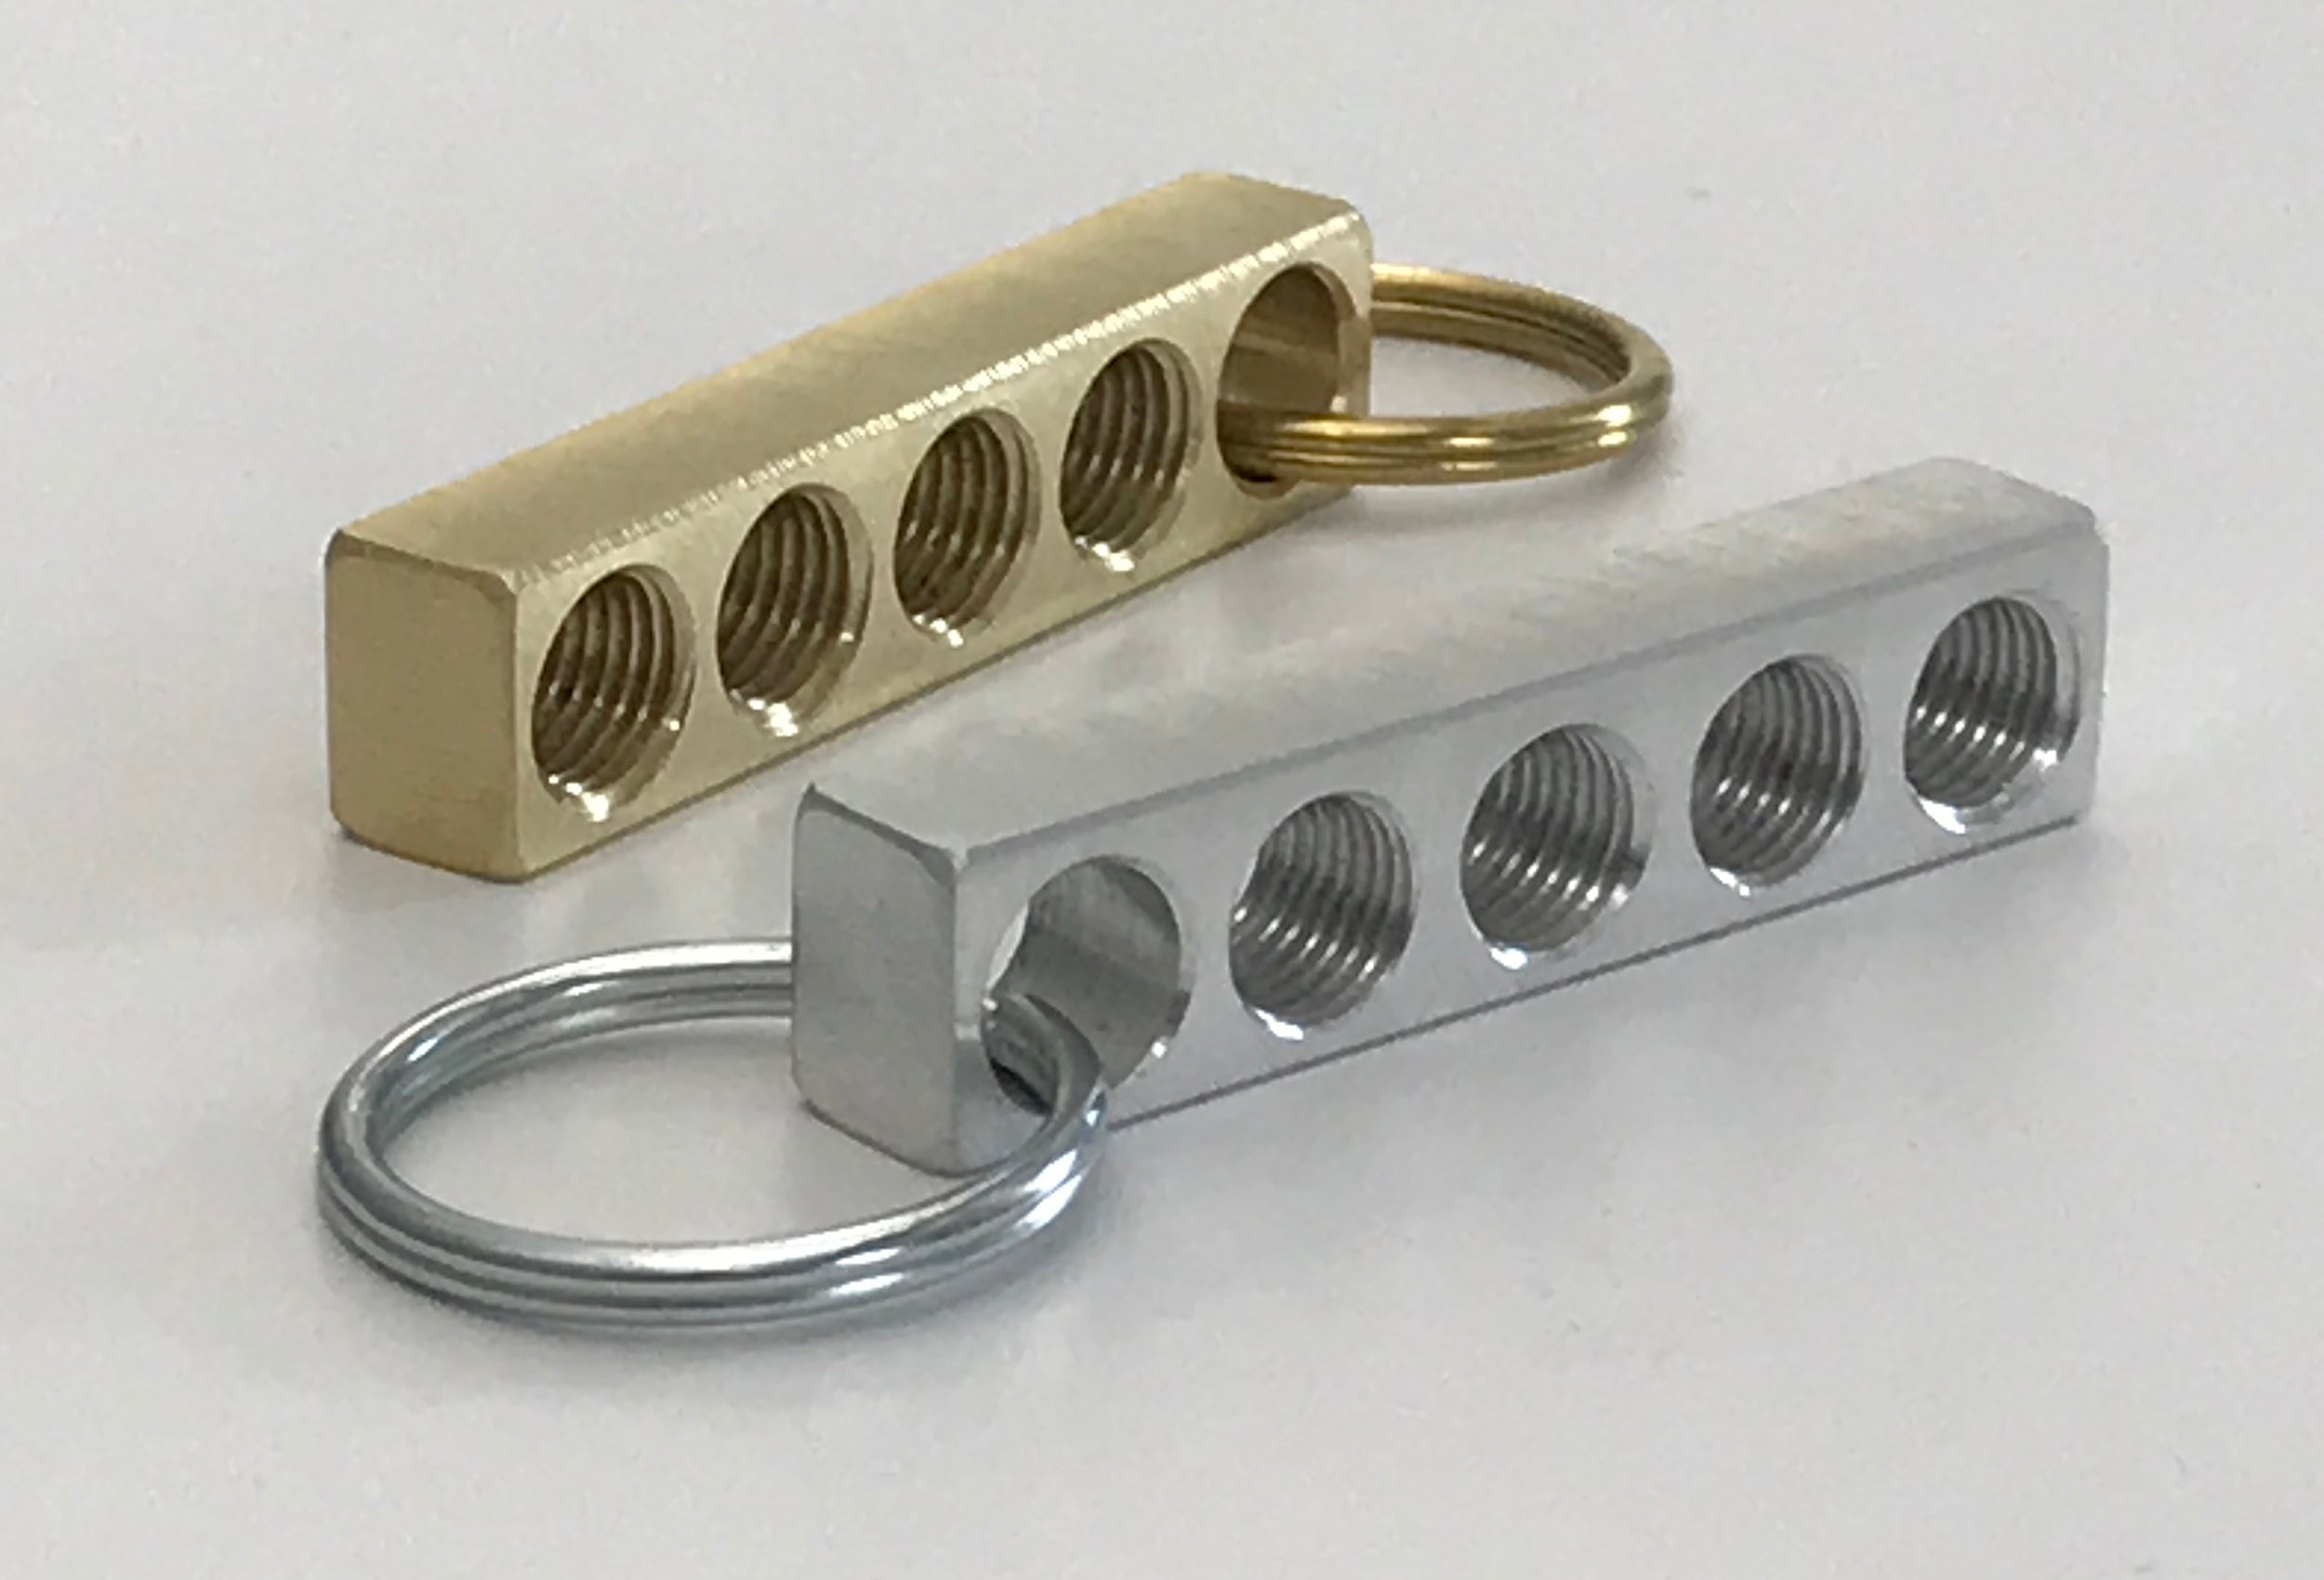 Buy VmG-Store Wheel Rim Keyring Metal Design 109 Pendant for Keys